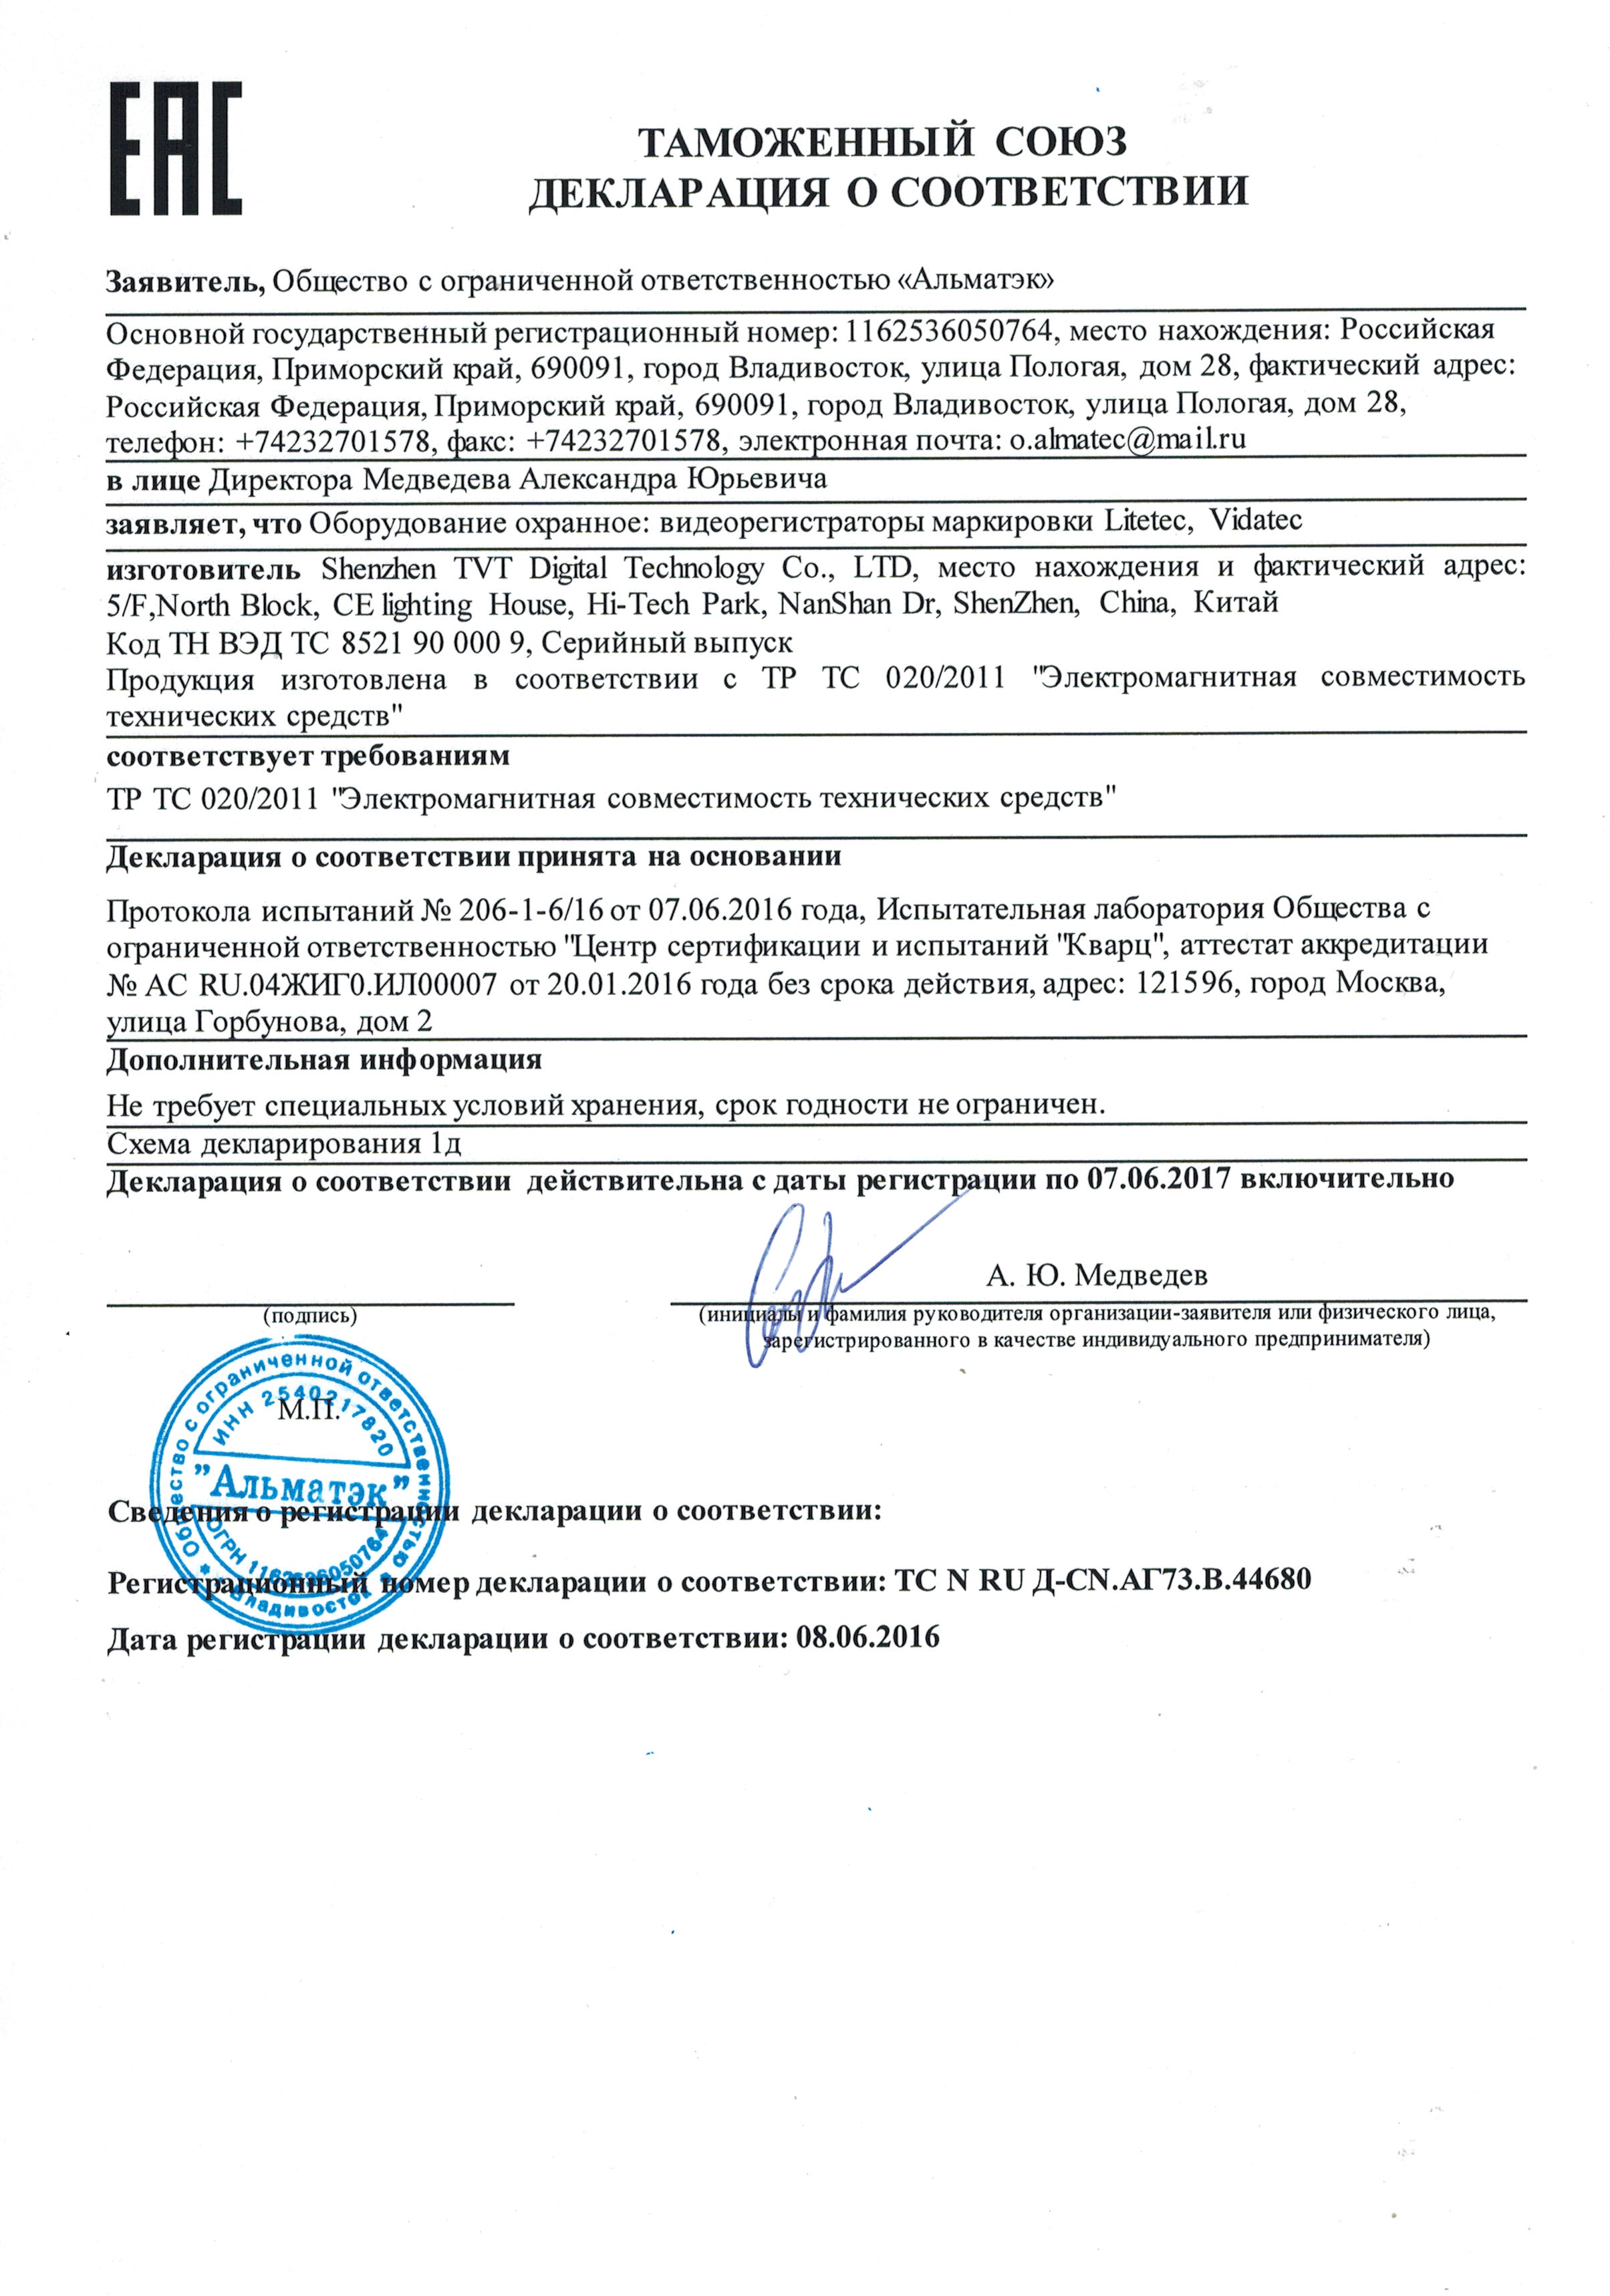 Сертификат на видеорегистраторы LiteTec